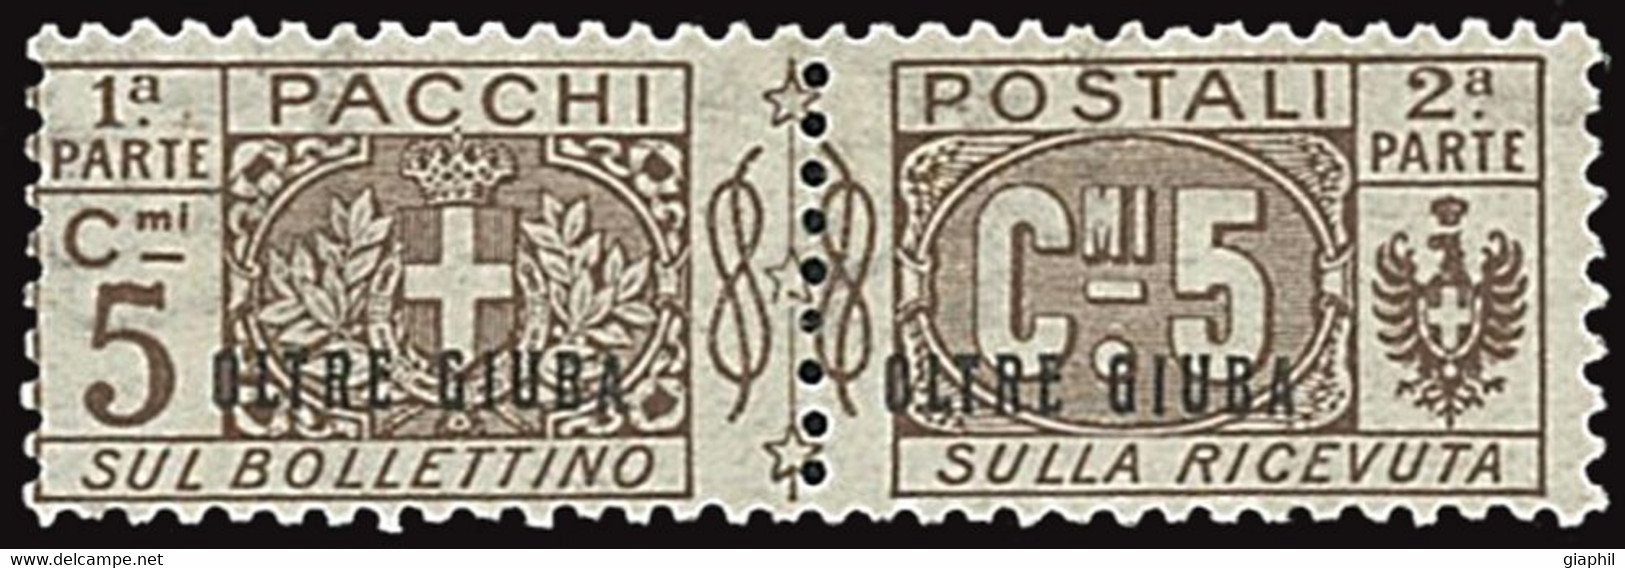 ITALY ITALIA OLTRE GIUBA 1925 PACCHI POSTALI 5 CENT. (Sass. 1) NUOVO MNH ** OFFERTA! - Oltre Giuba